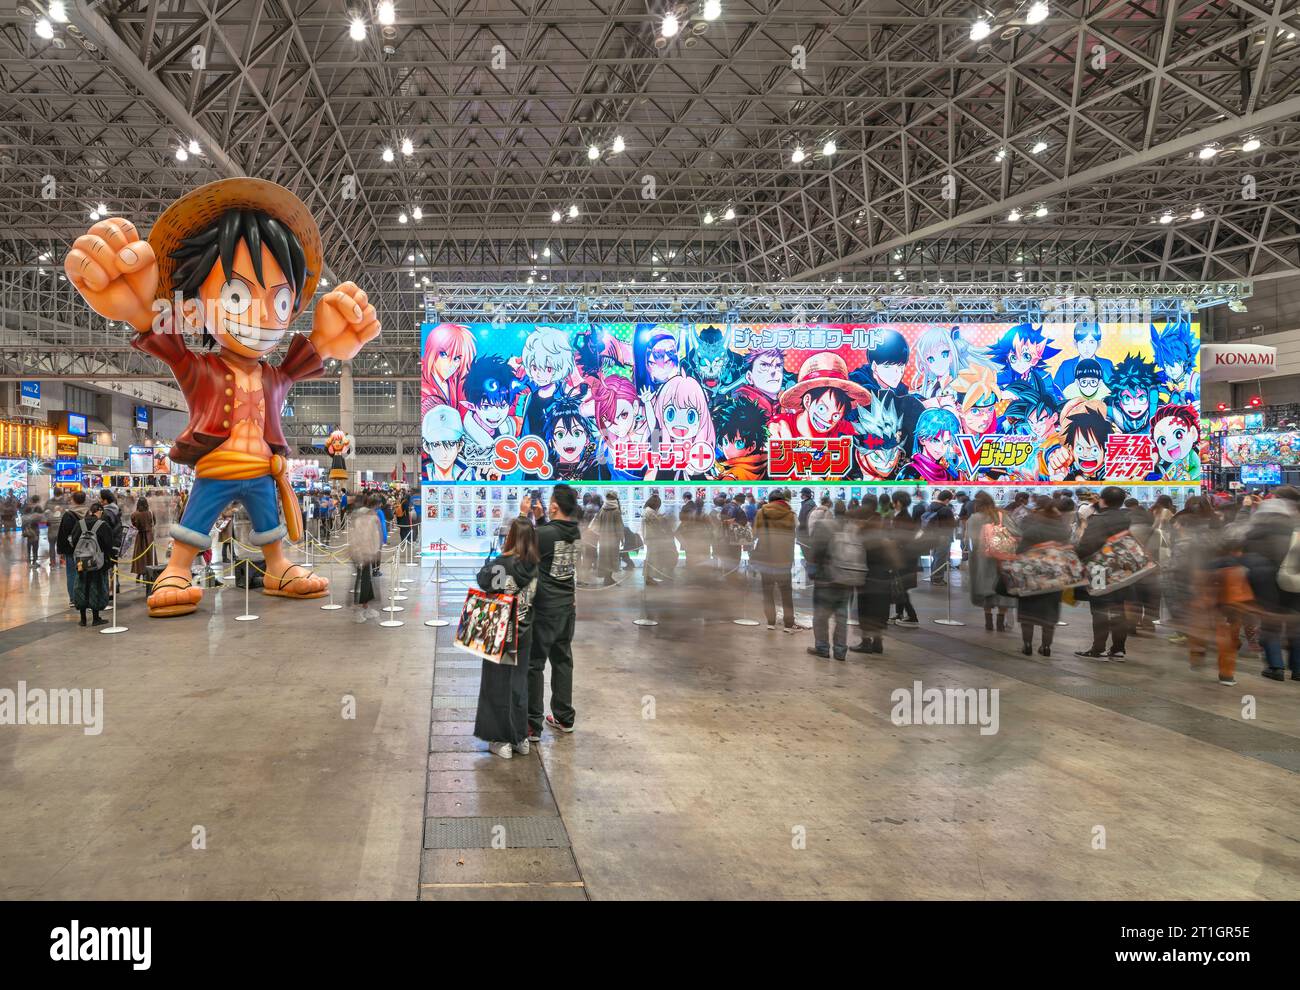 chiba, japon - décembre 18 2022 : personnage manga gonflable de la série d'anime japonais One Piece levant les bras dans l'air accueillant les consommateurs à côté d'une énorme pancarte Banque D'Images